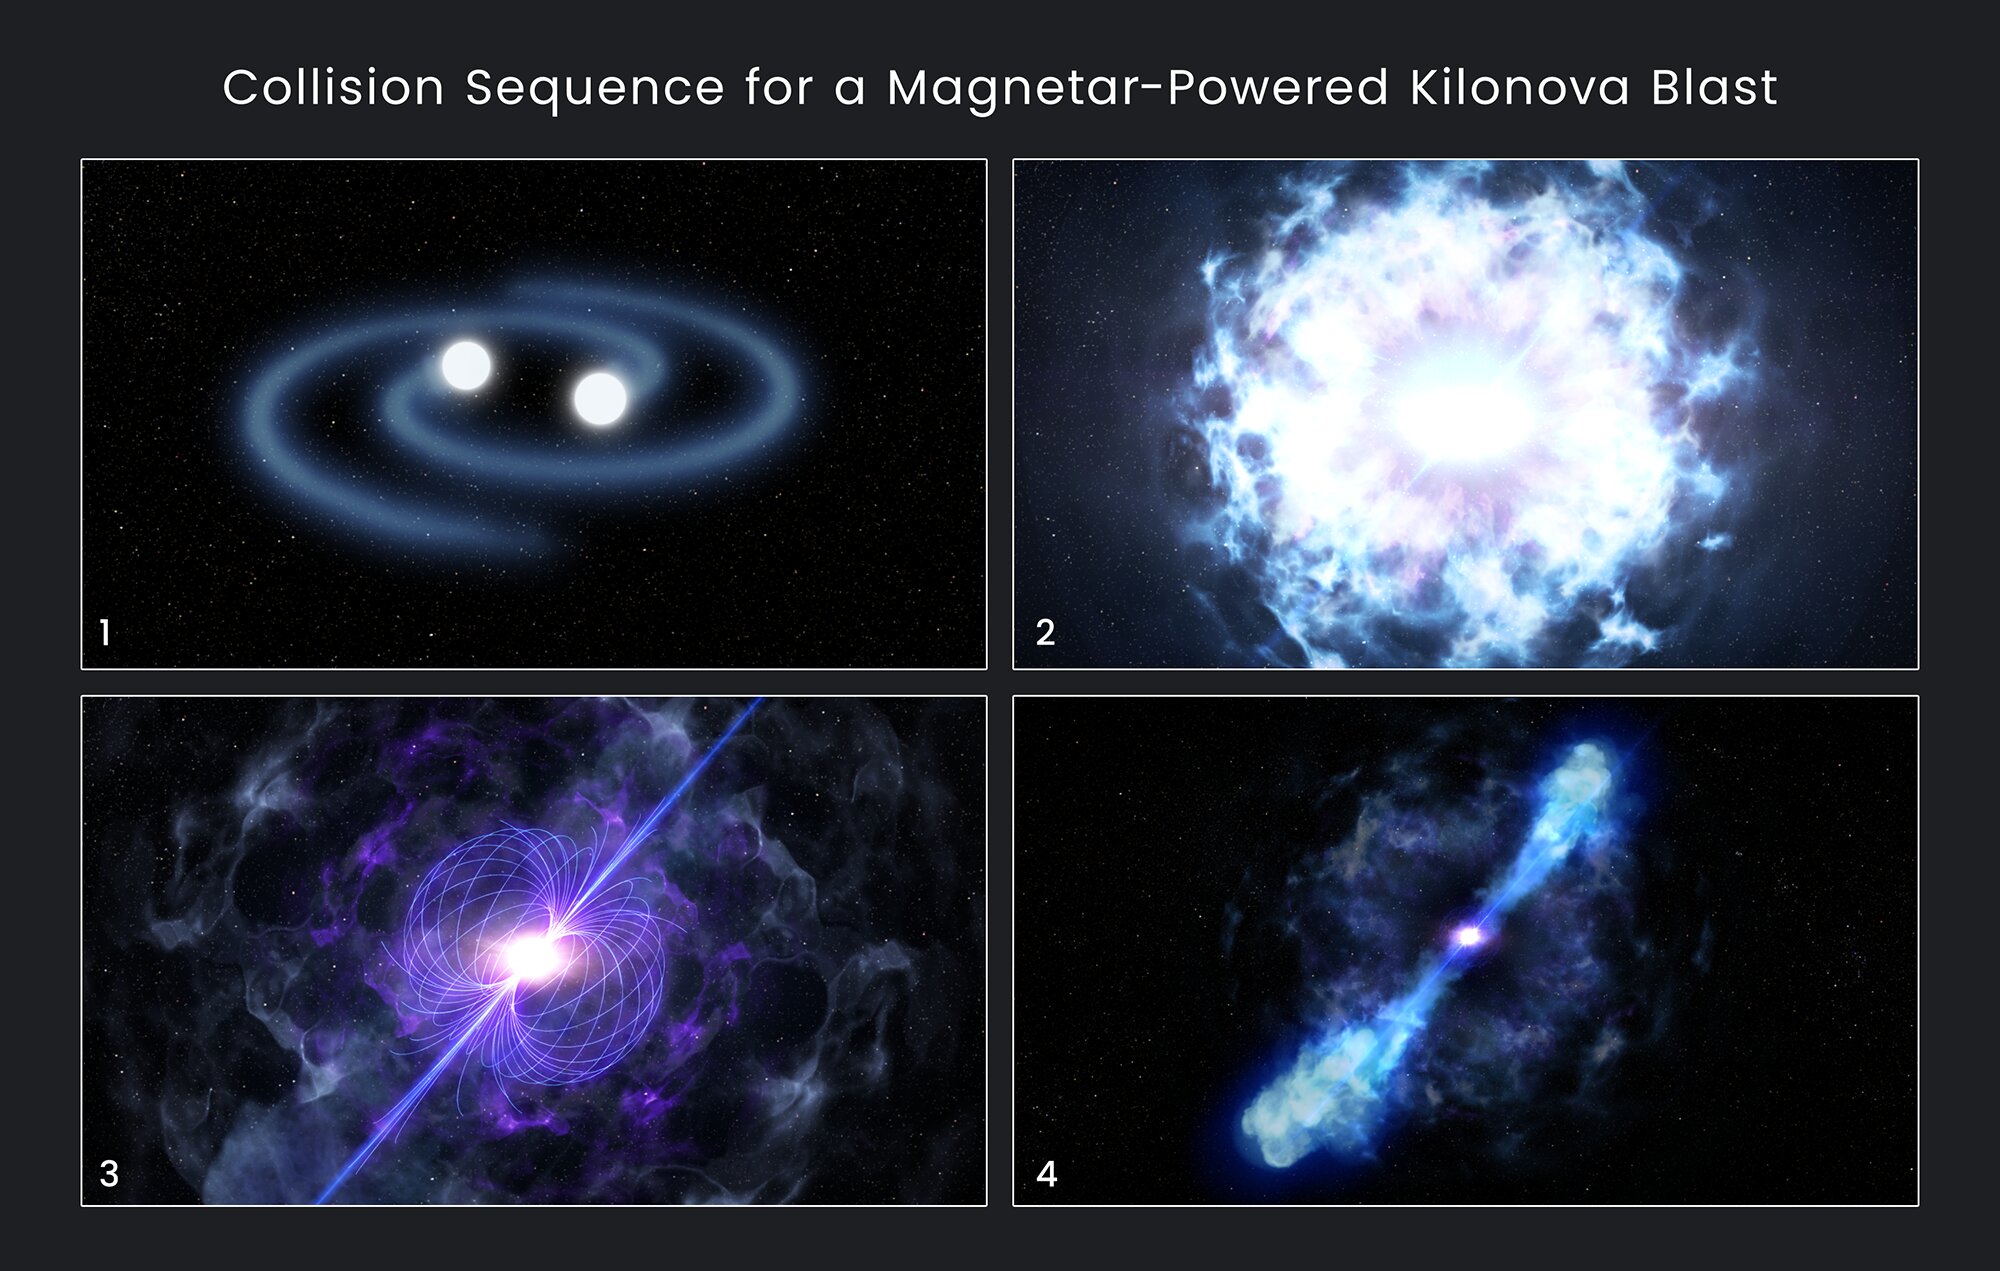 Zrození magnetaru po srážce neutronových hvězd. Kredit: NASA, ESA, and D. Player (STScI).